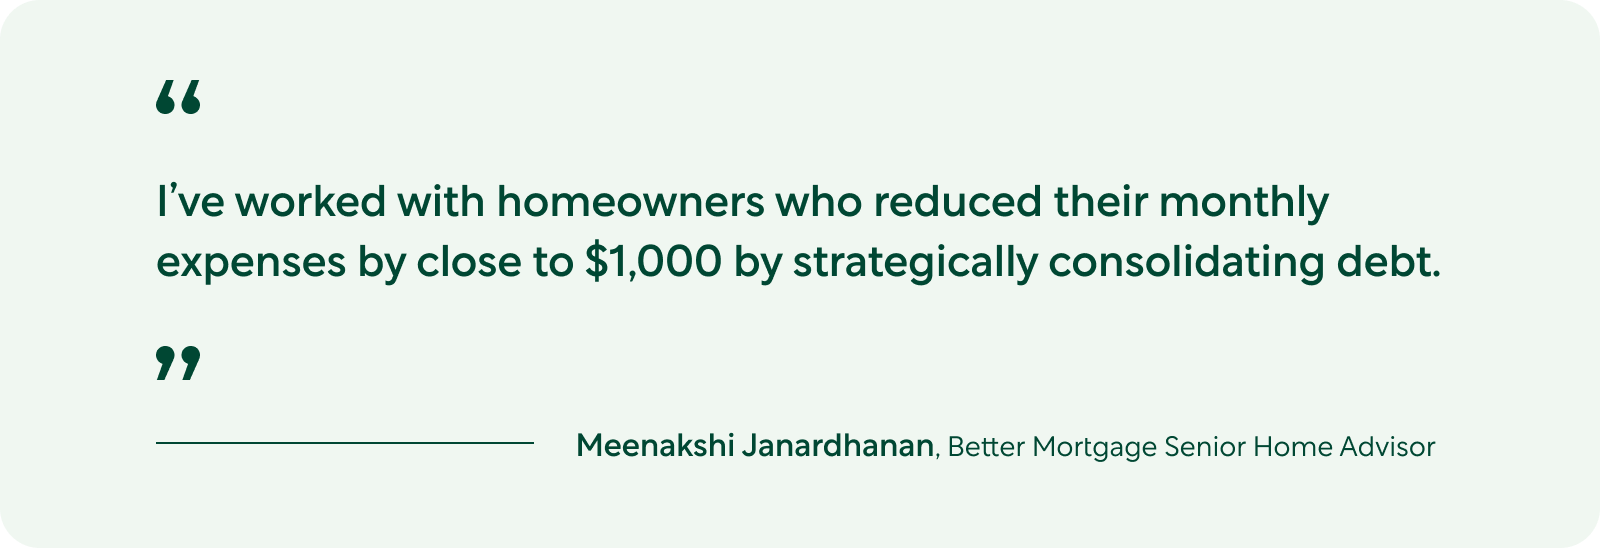 Quote from Meenakshi Janardhanan, Better Mortgage Senior Home Advisor